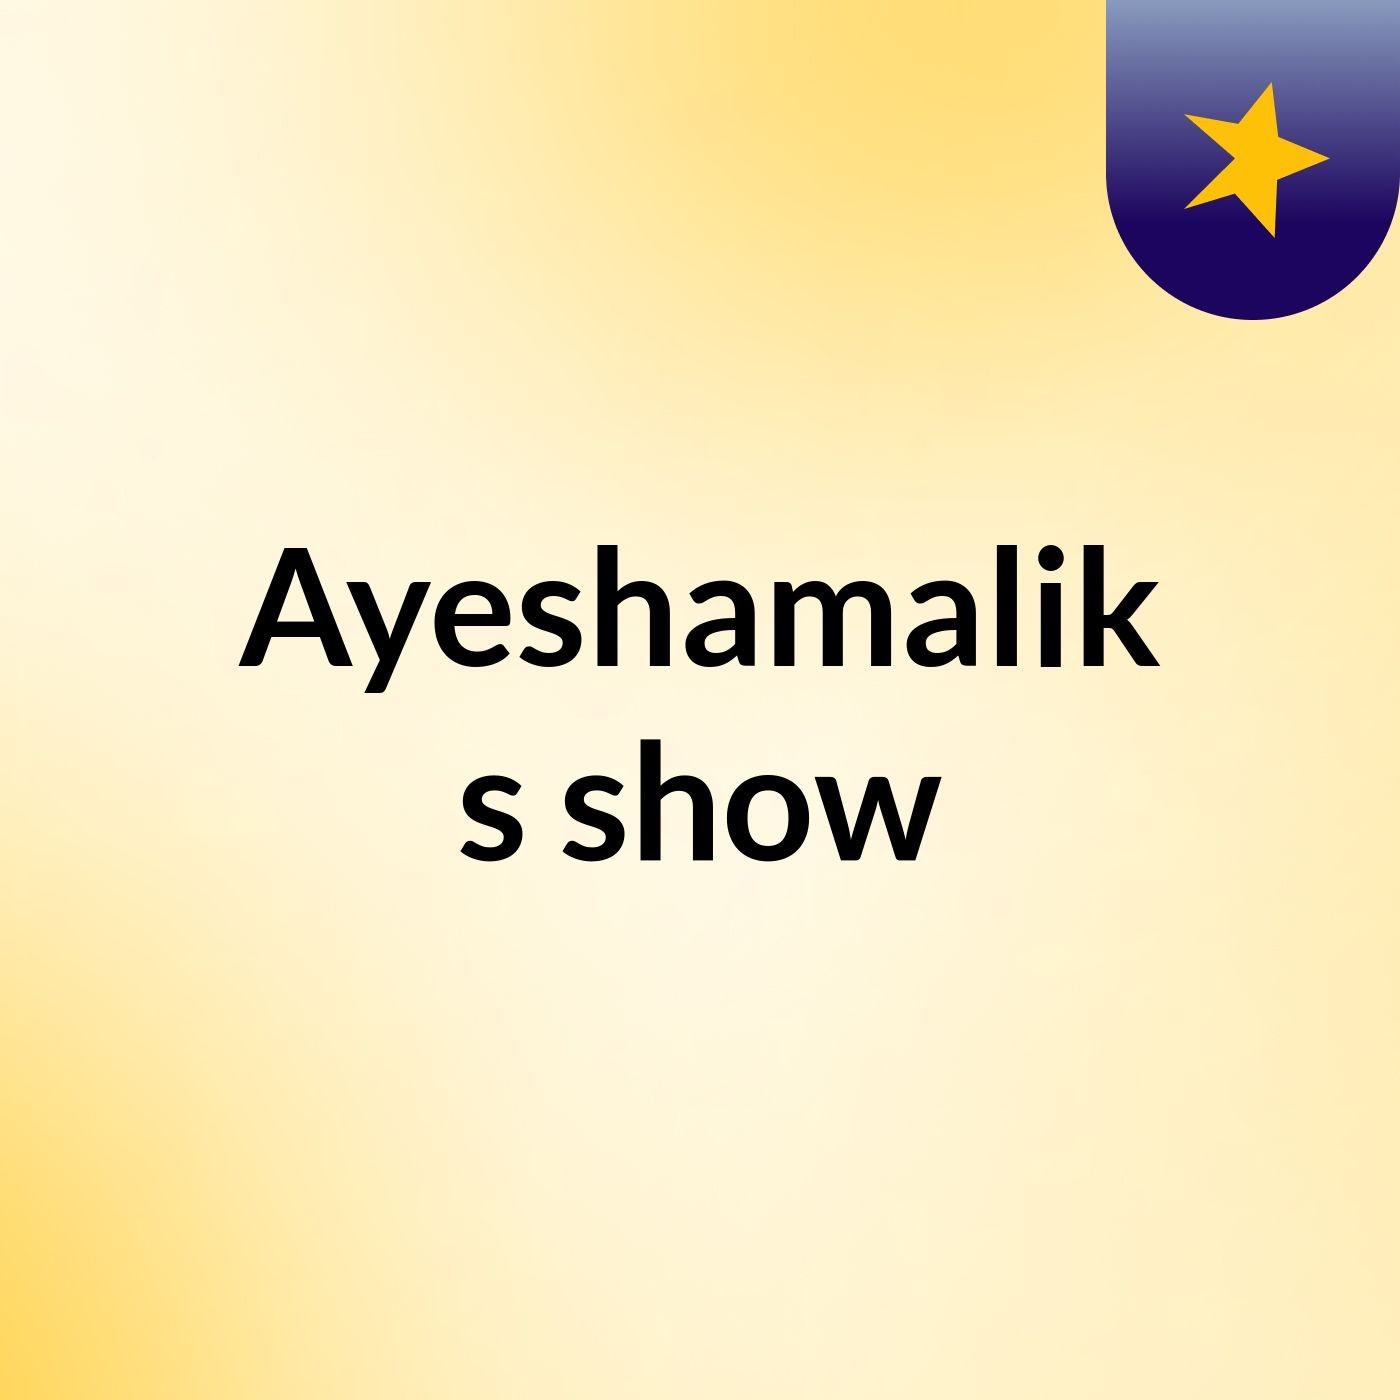 Ayeshamalik's show